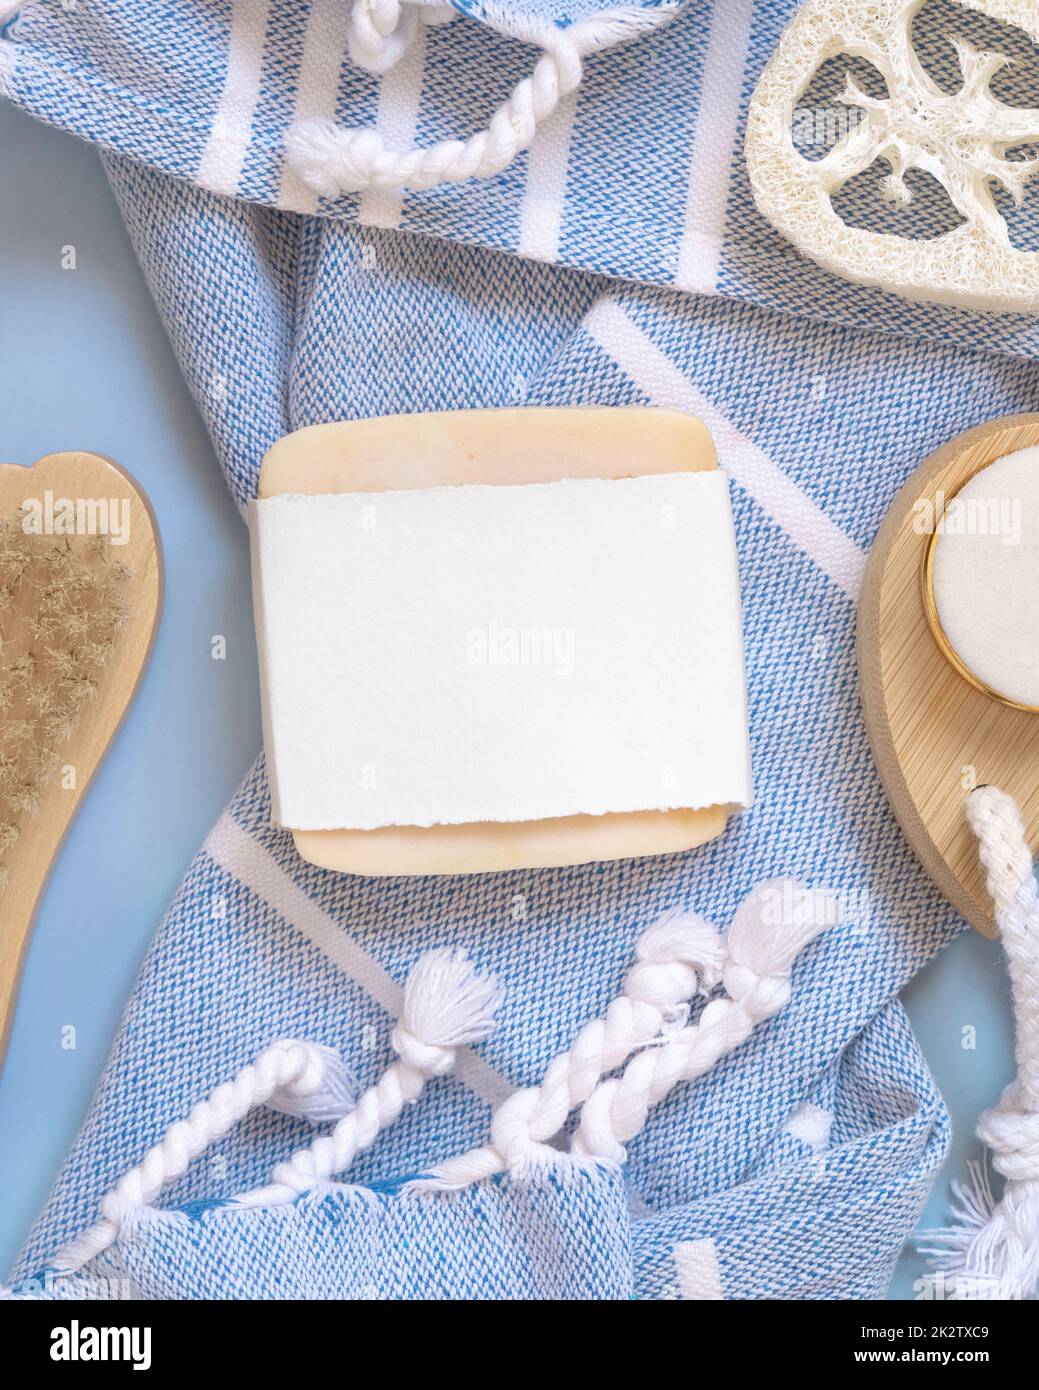 Porte-savon fait main sur serviette de bain bleue vue de dessus, maquette d'emballage. Produits de beauté naturels Banque D'Images